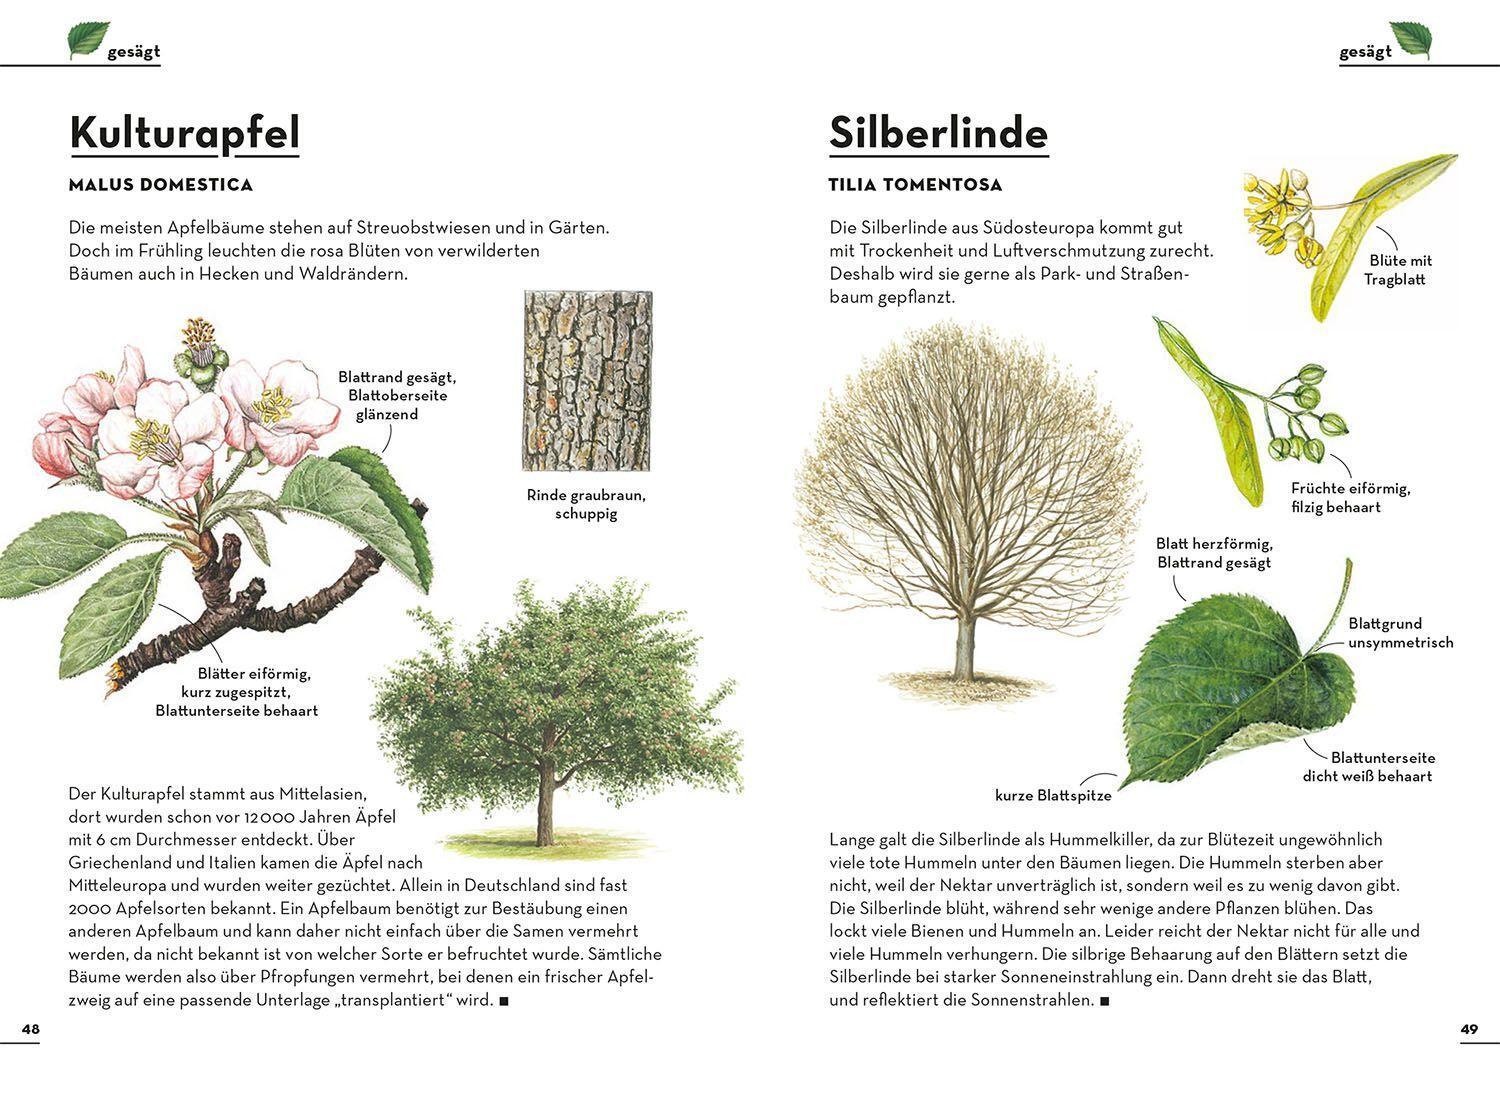 Bild: 9783440173862 | Einfach Bäume | Holger Haag | Taschenbuch | Deutsch | 2022 | Kosmos